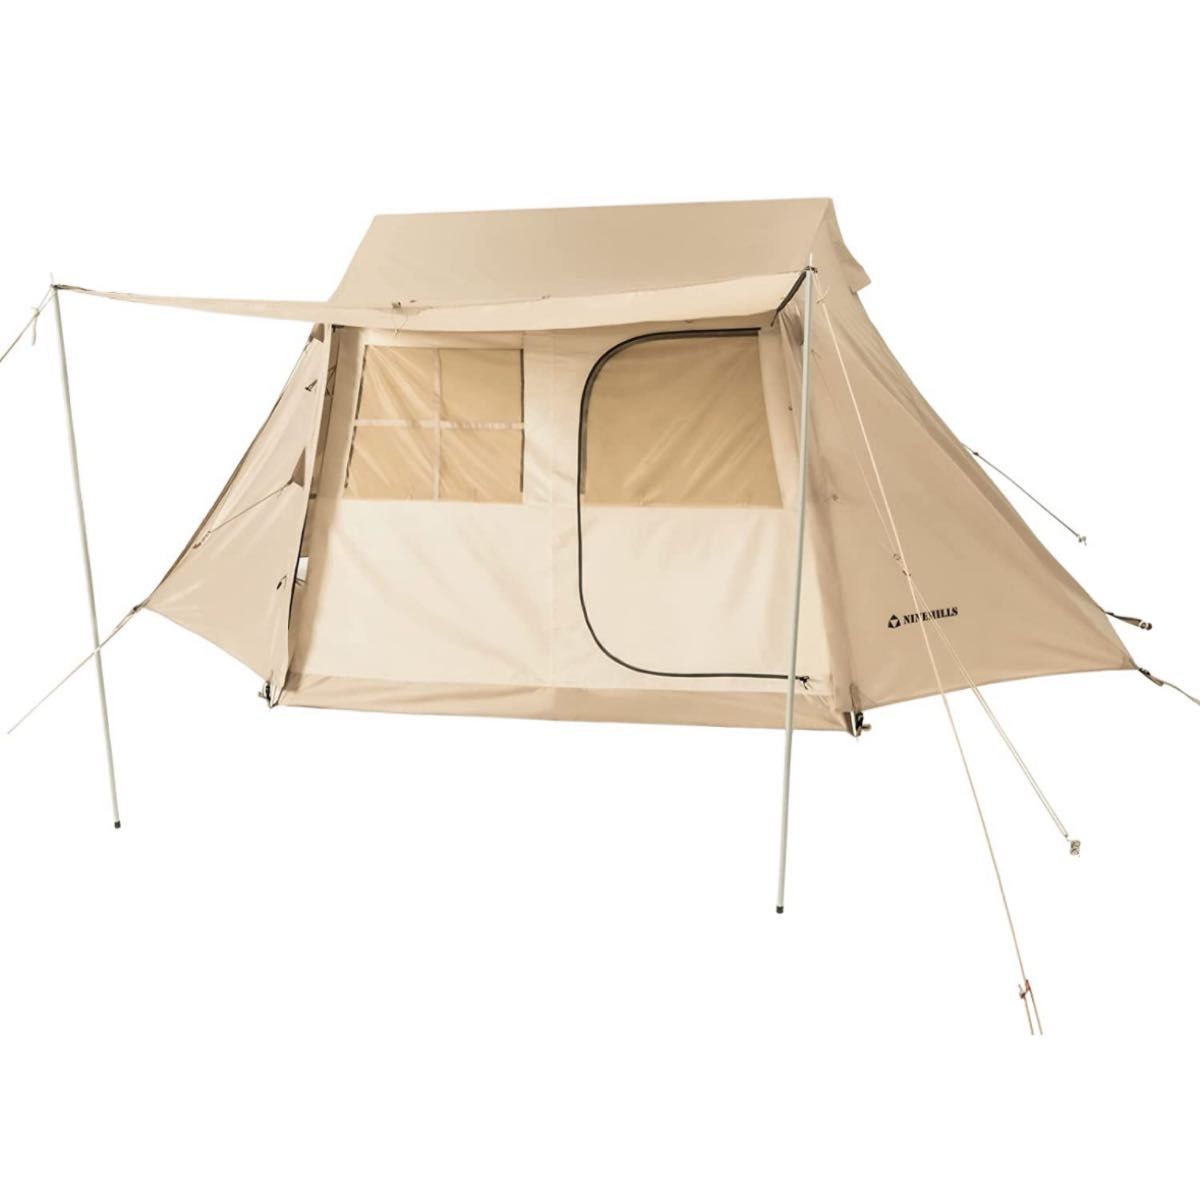 ペグ 6本セット 30cm キャンプ テント タープ アウトドア 杭